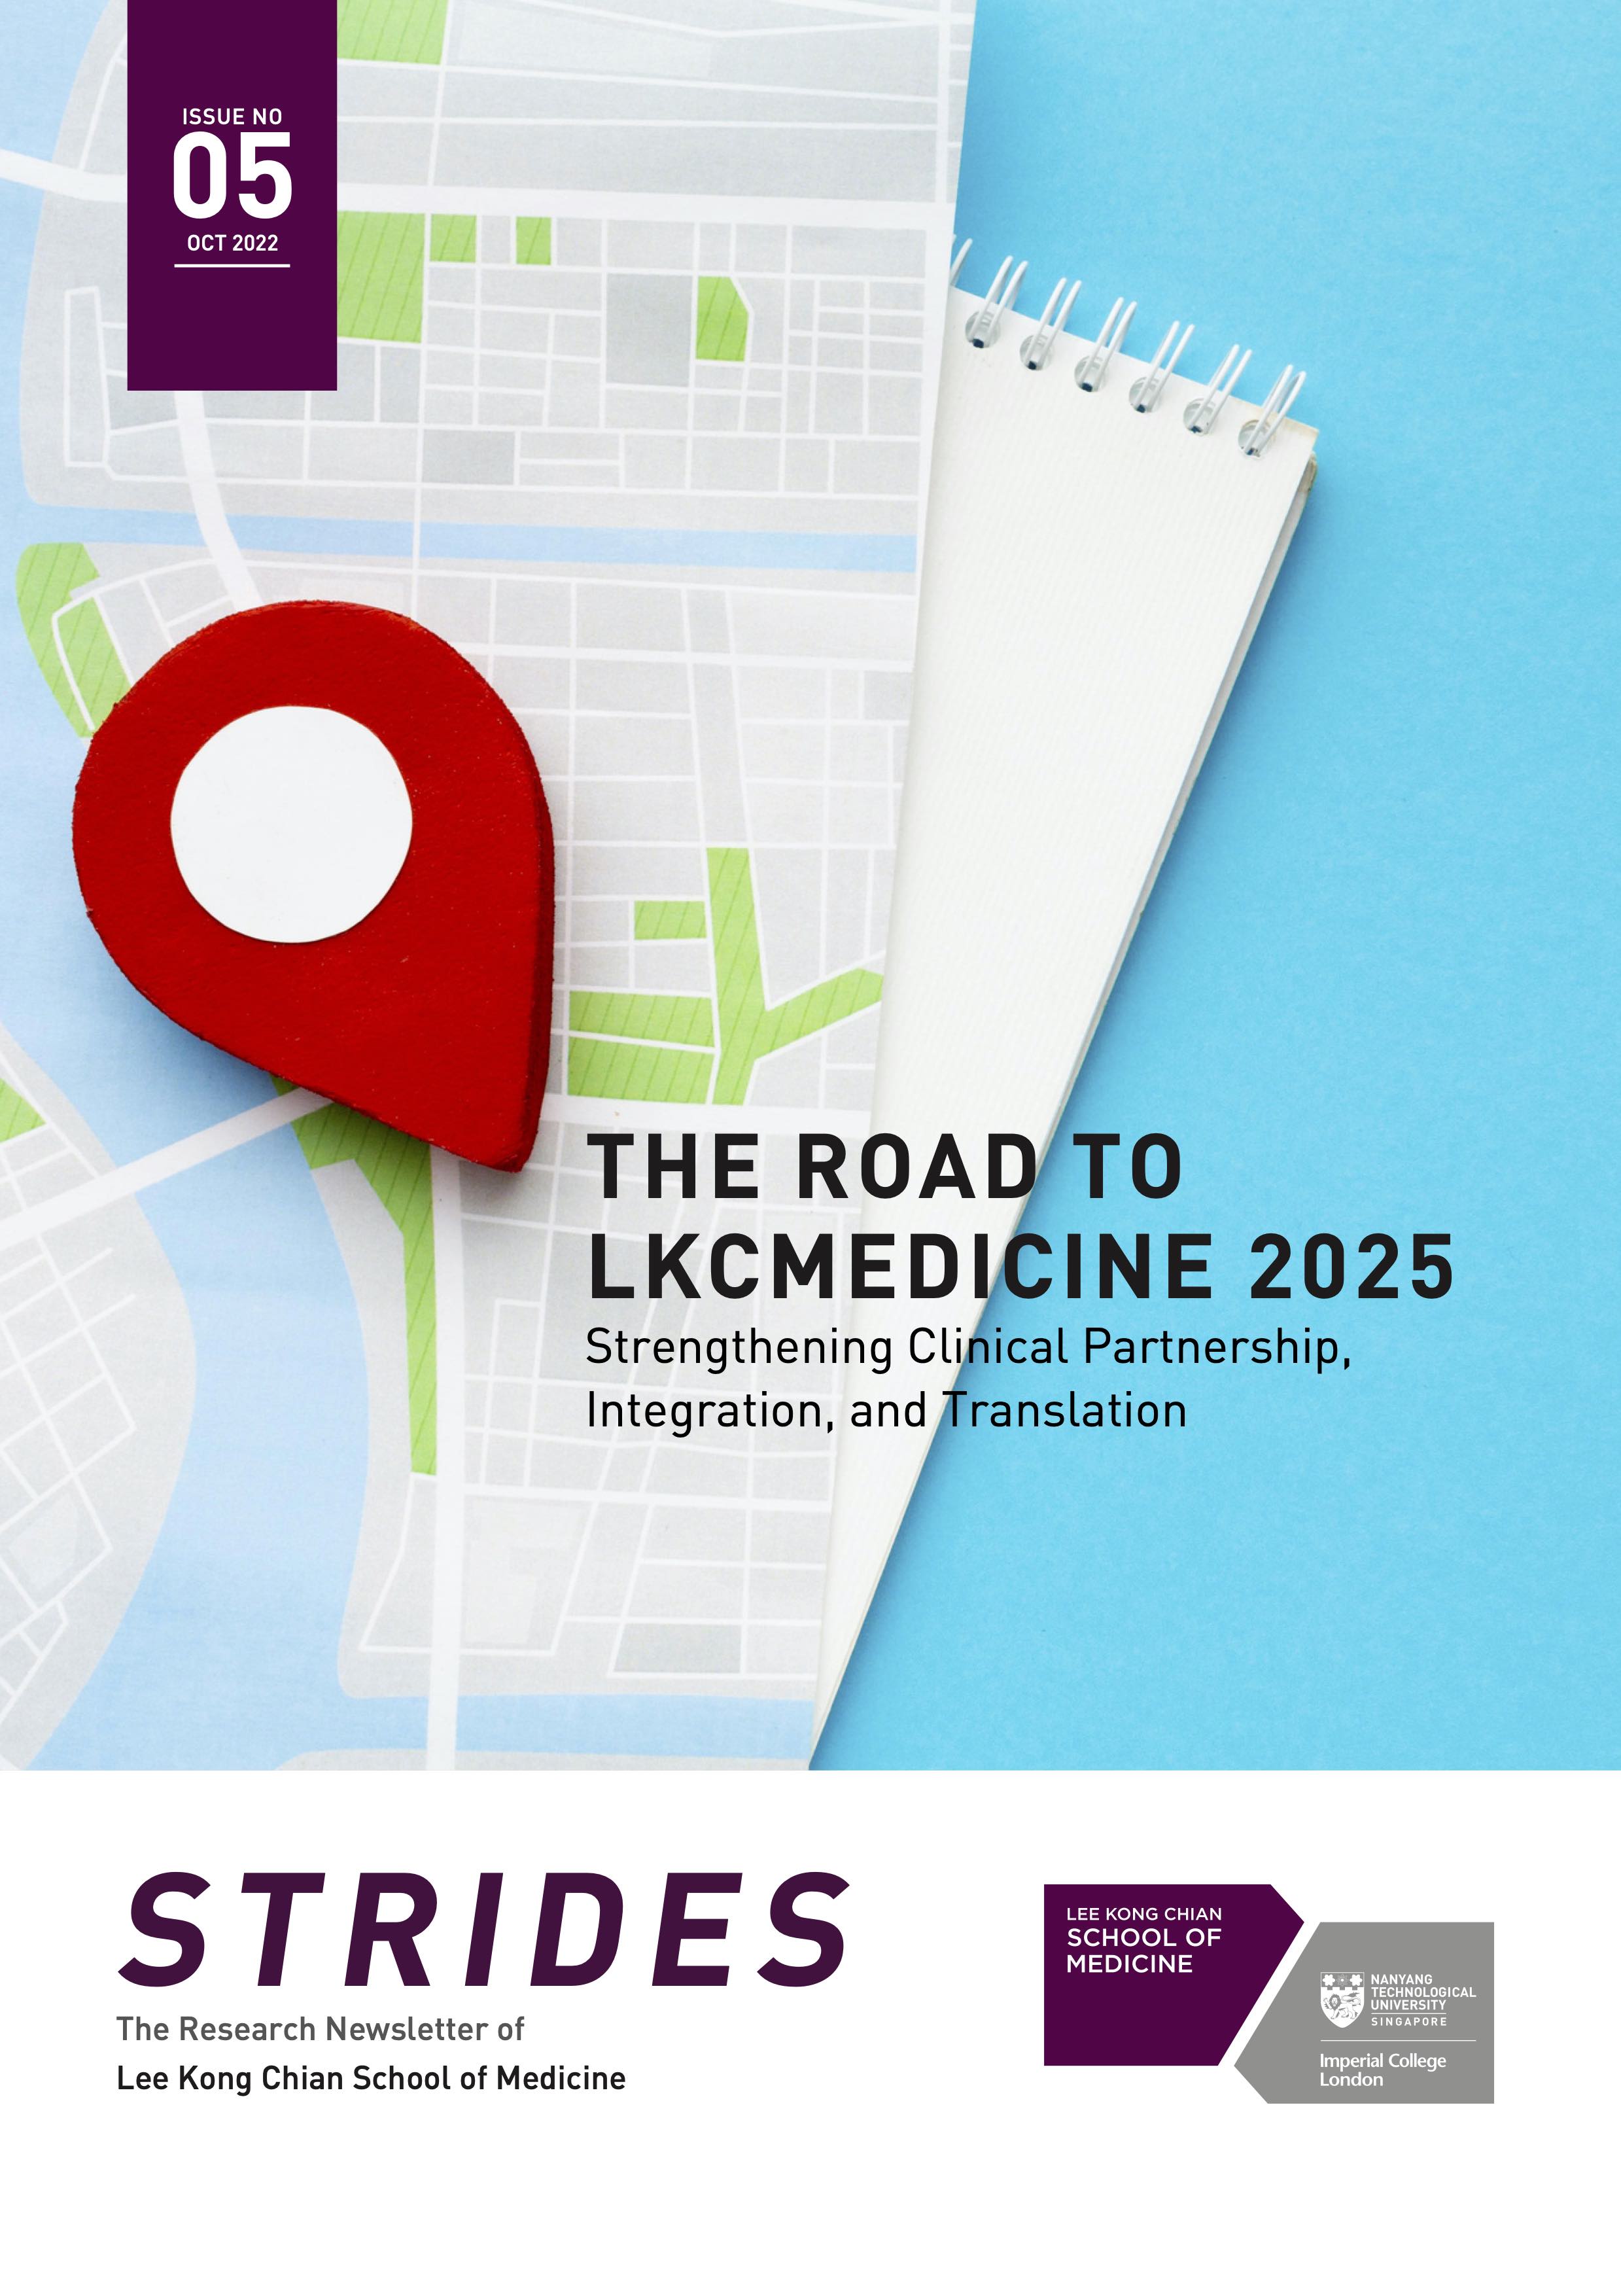 LKCMedicine STRIDES Issue 05 - Oct 2022